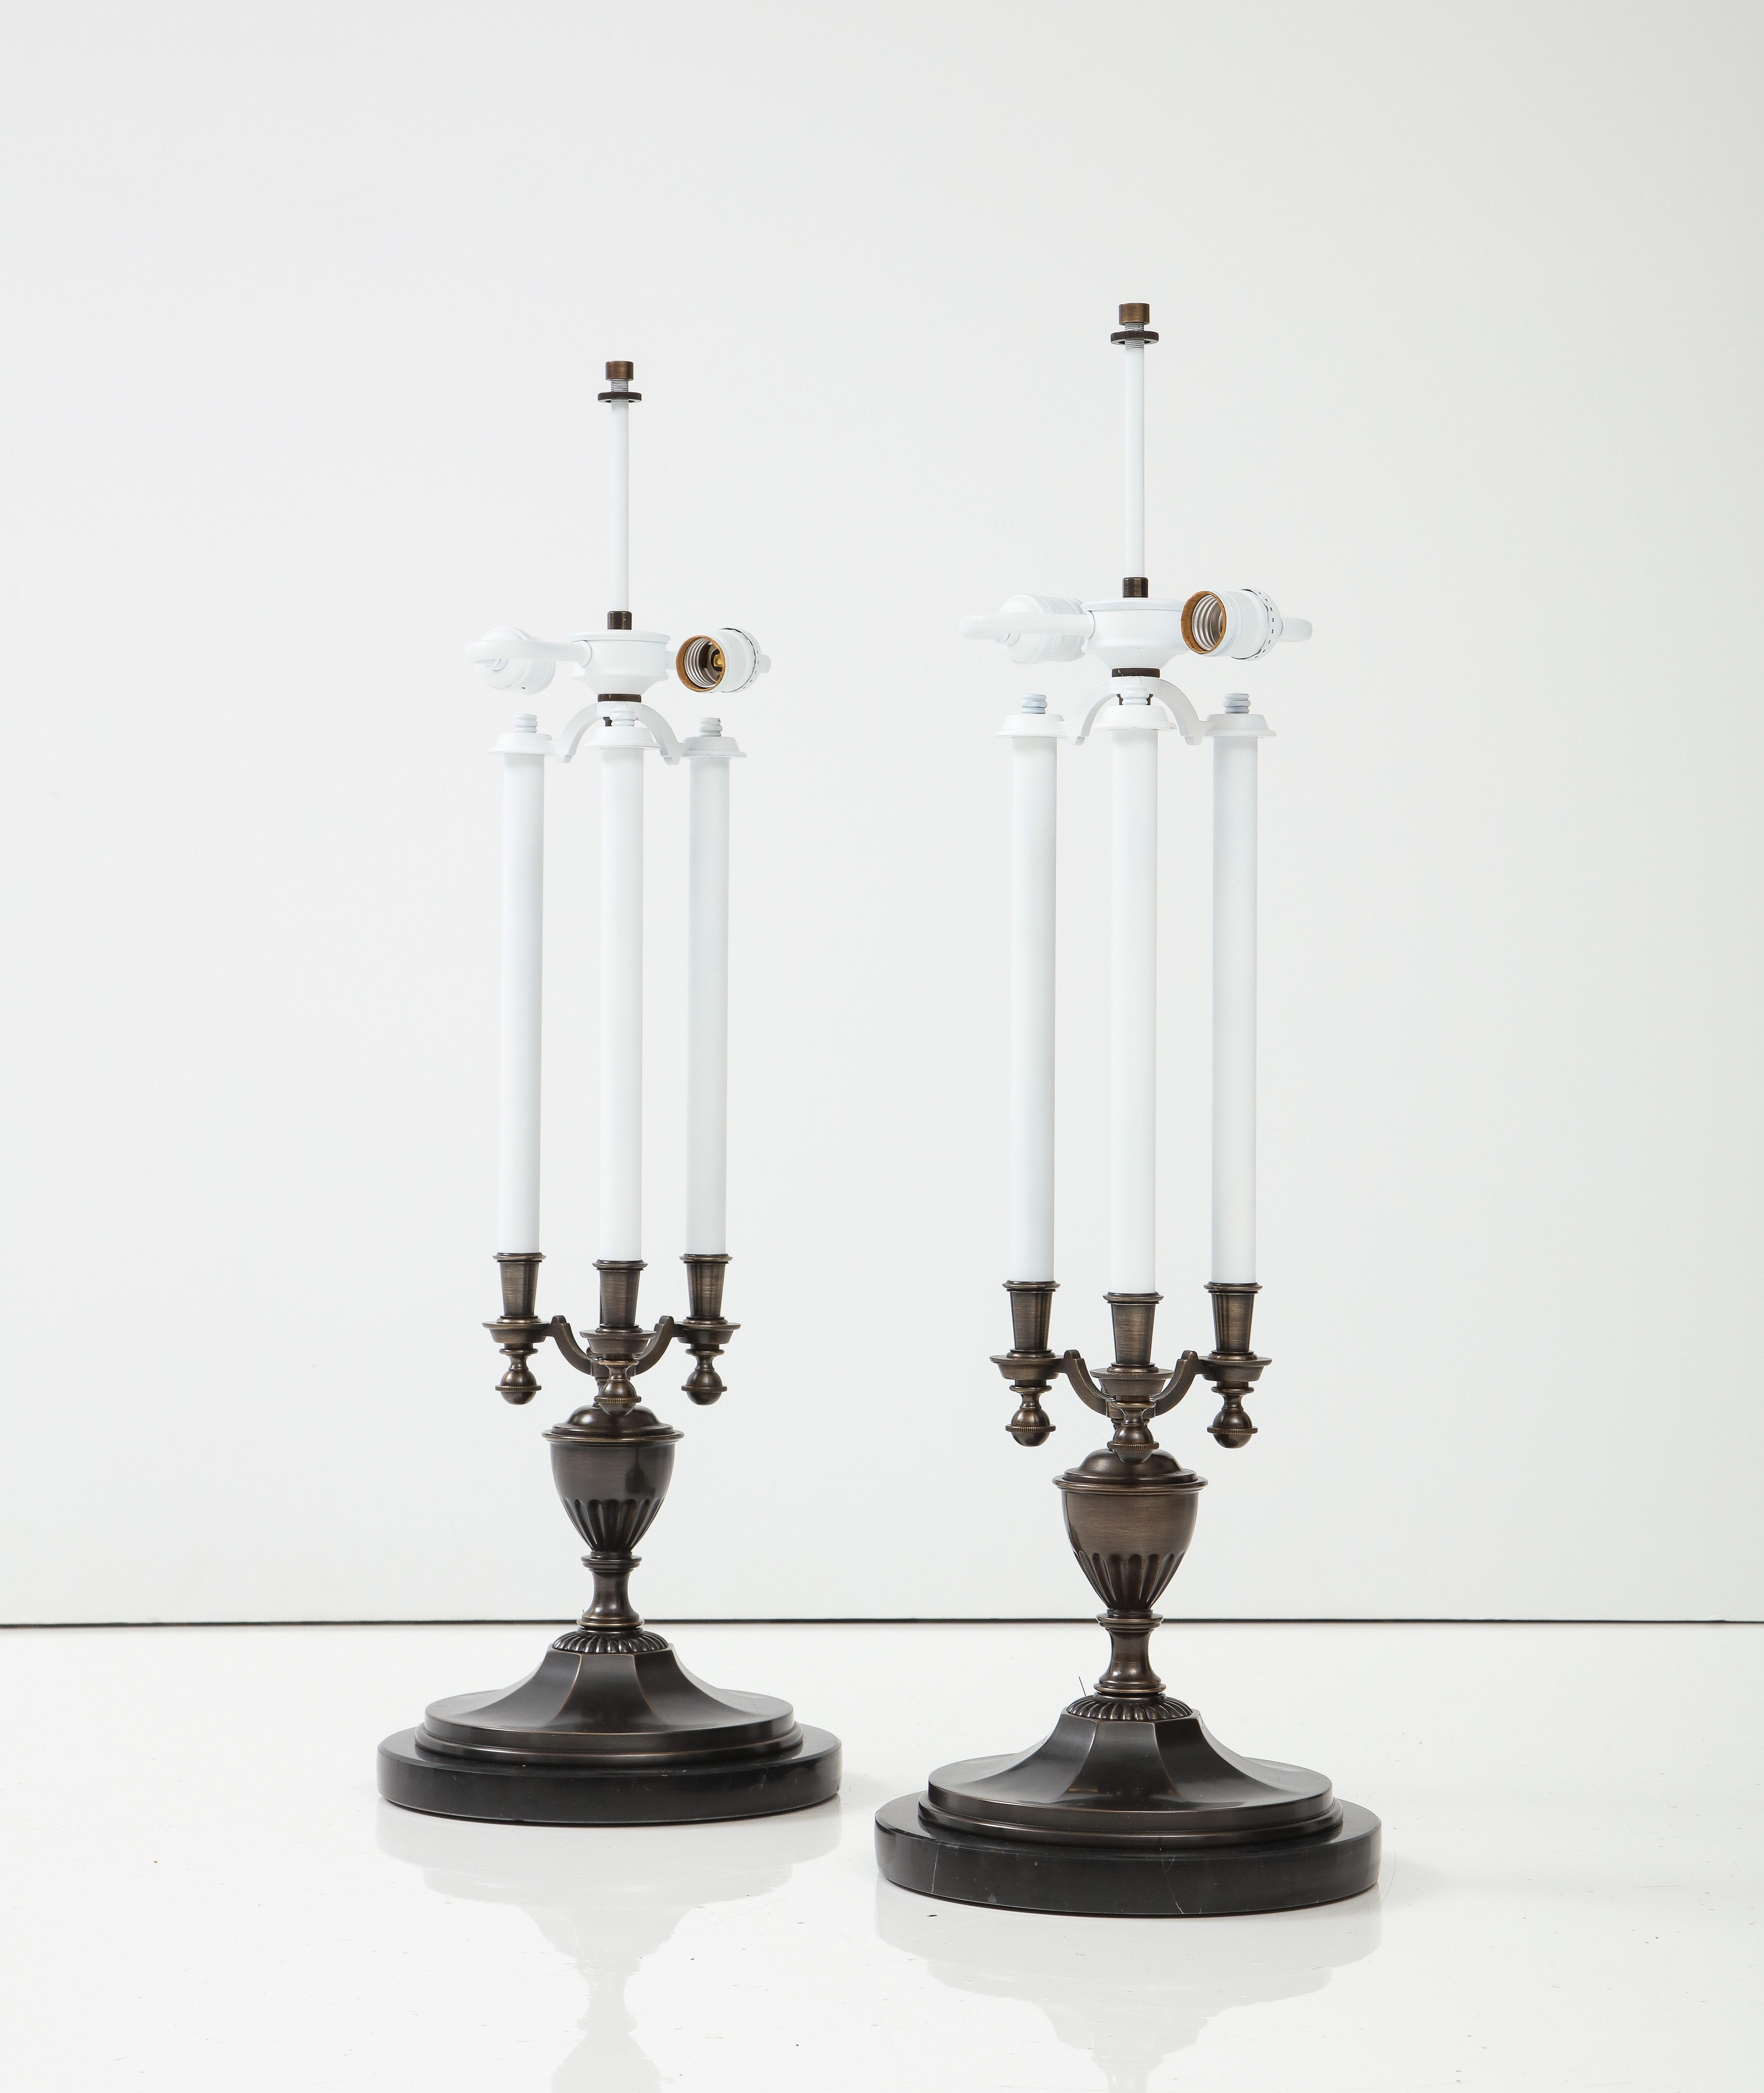 Traditionelle Kandelaberlampen in moderner Bronzeausführung. Jede Lampe hat 3 emaillierte Metallkerzen mit Fassungen für Kandelaberbirnen. Die Lampen stehen auf schwarzen Marmorsockeln. Für die Verwendung in den USA umverdrahtet.